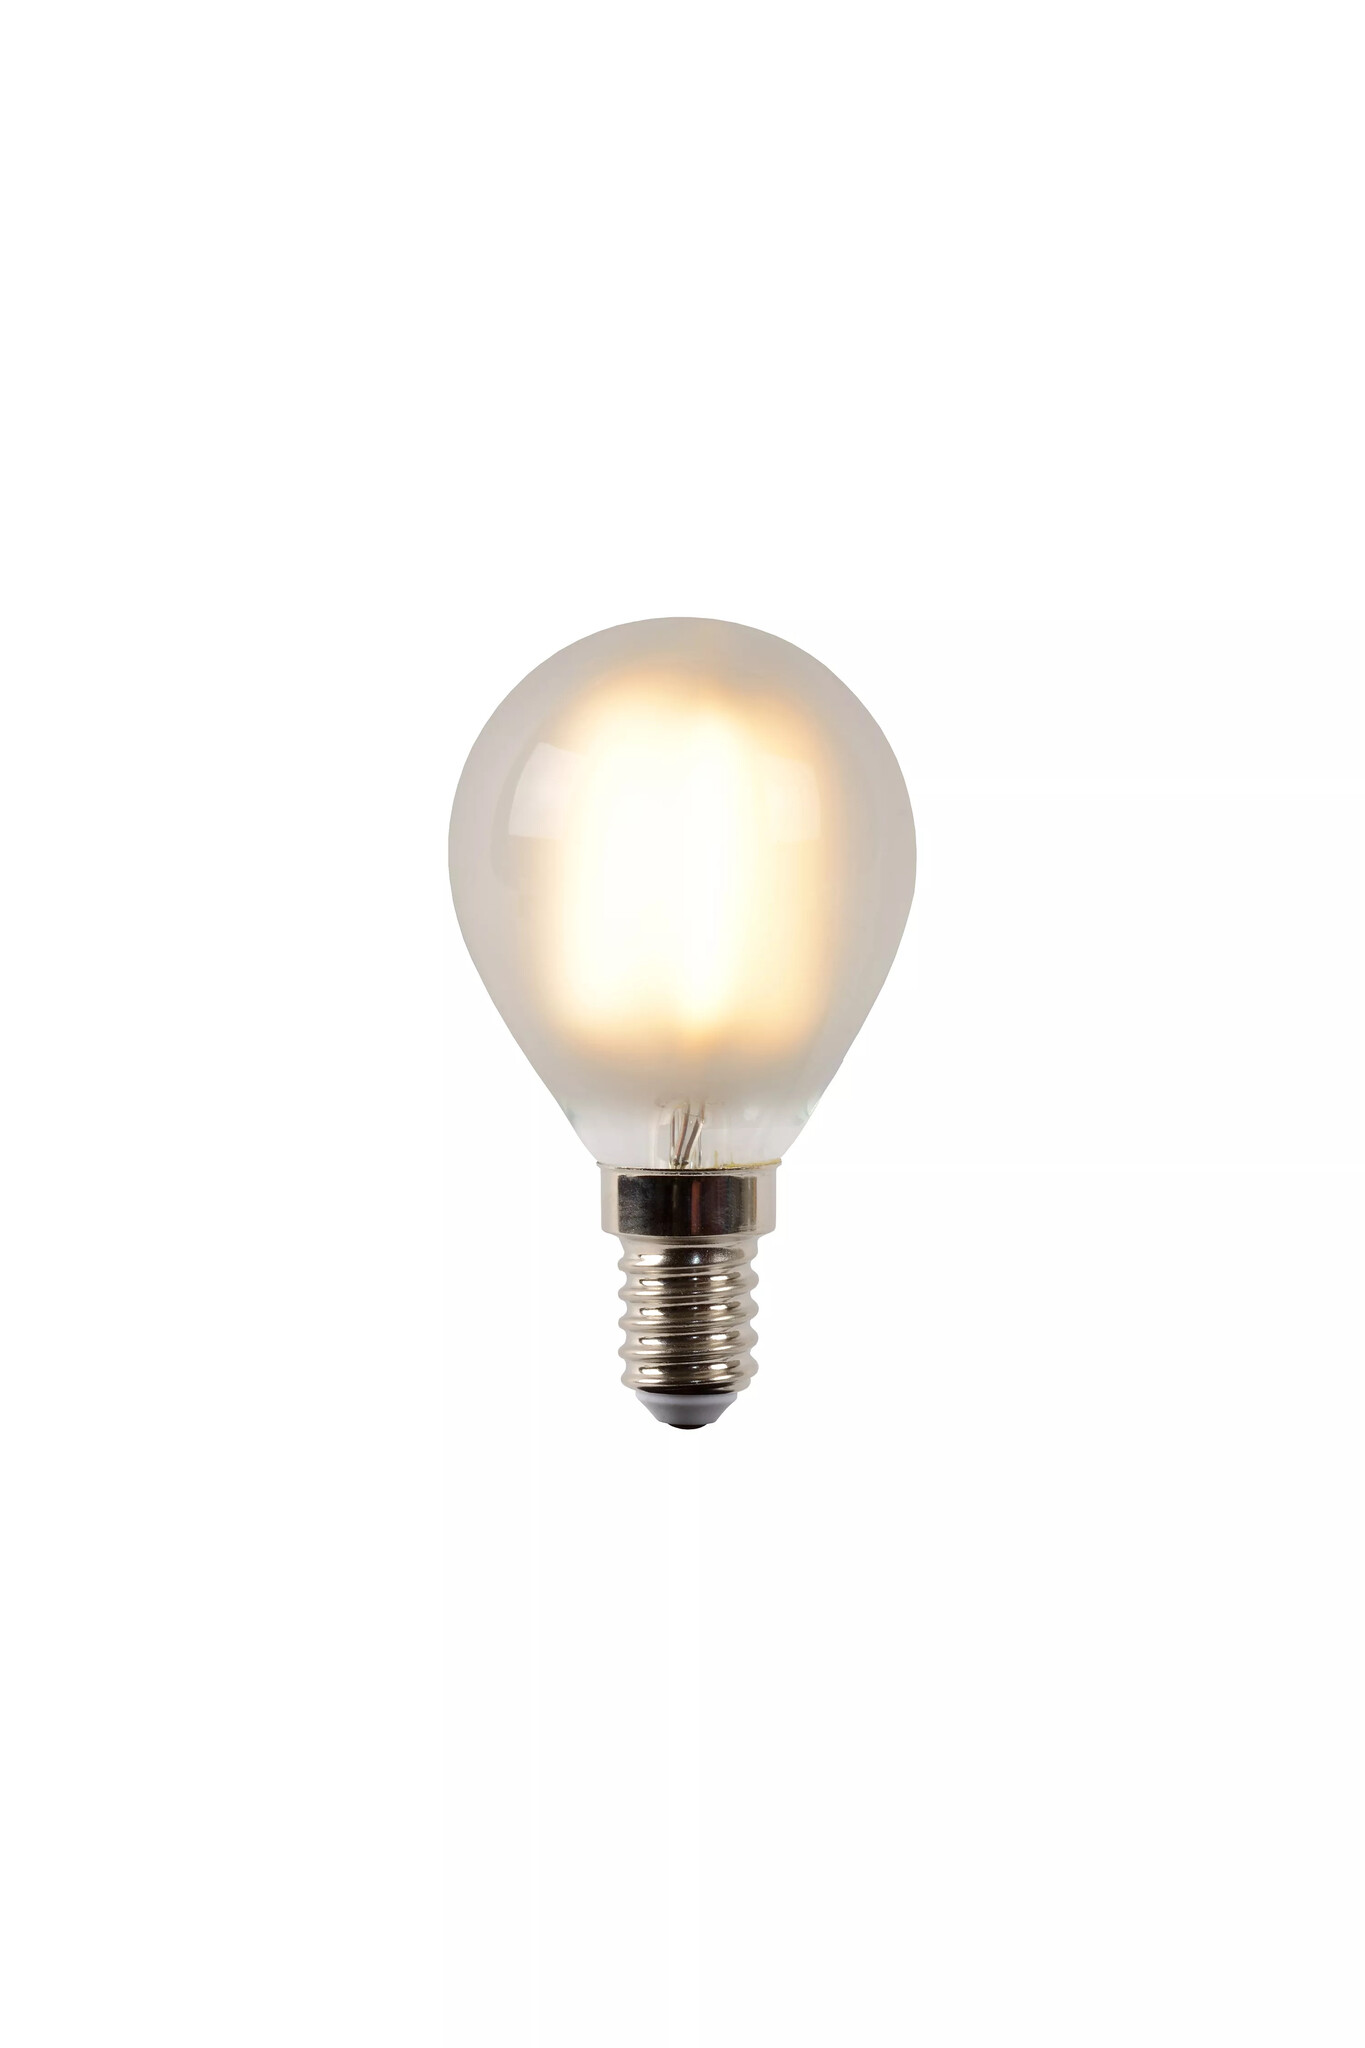 Petite ampoule boule E14 dimmable économique 3W ou 4W